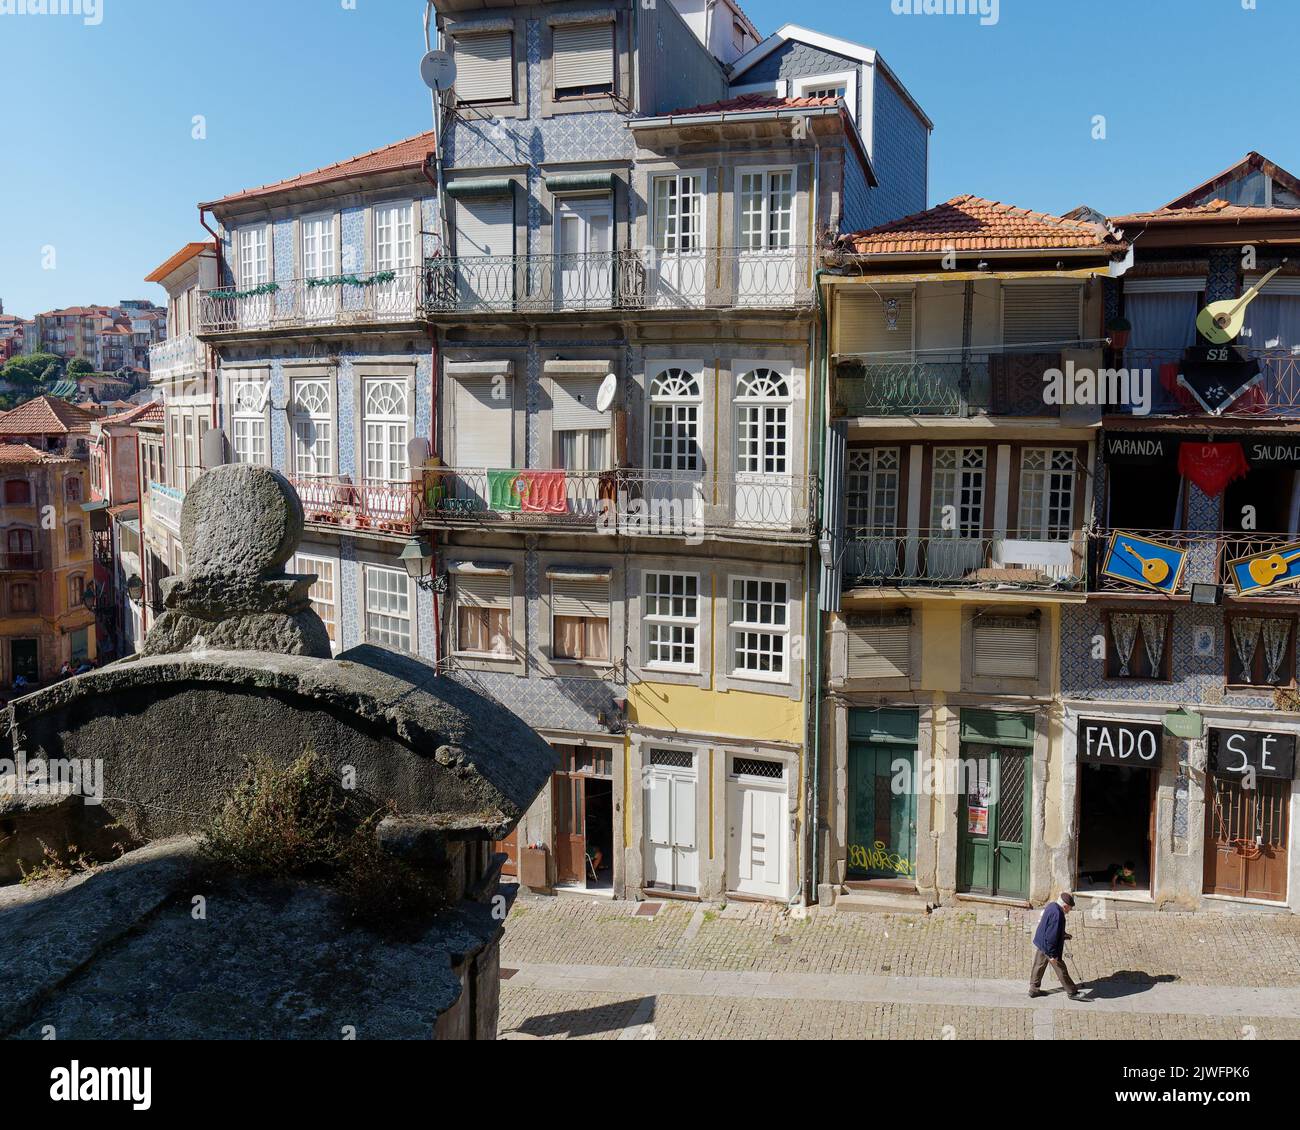 Les bâtiments traditionnels de Porto avec des balcons tandis qu'un homme âgé marche le long de la rue. Un spectacle Fado avec guitares à l'extérieur est sur la droite. Banque D'Images